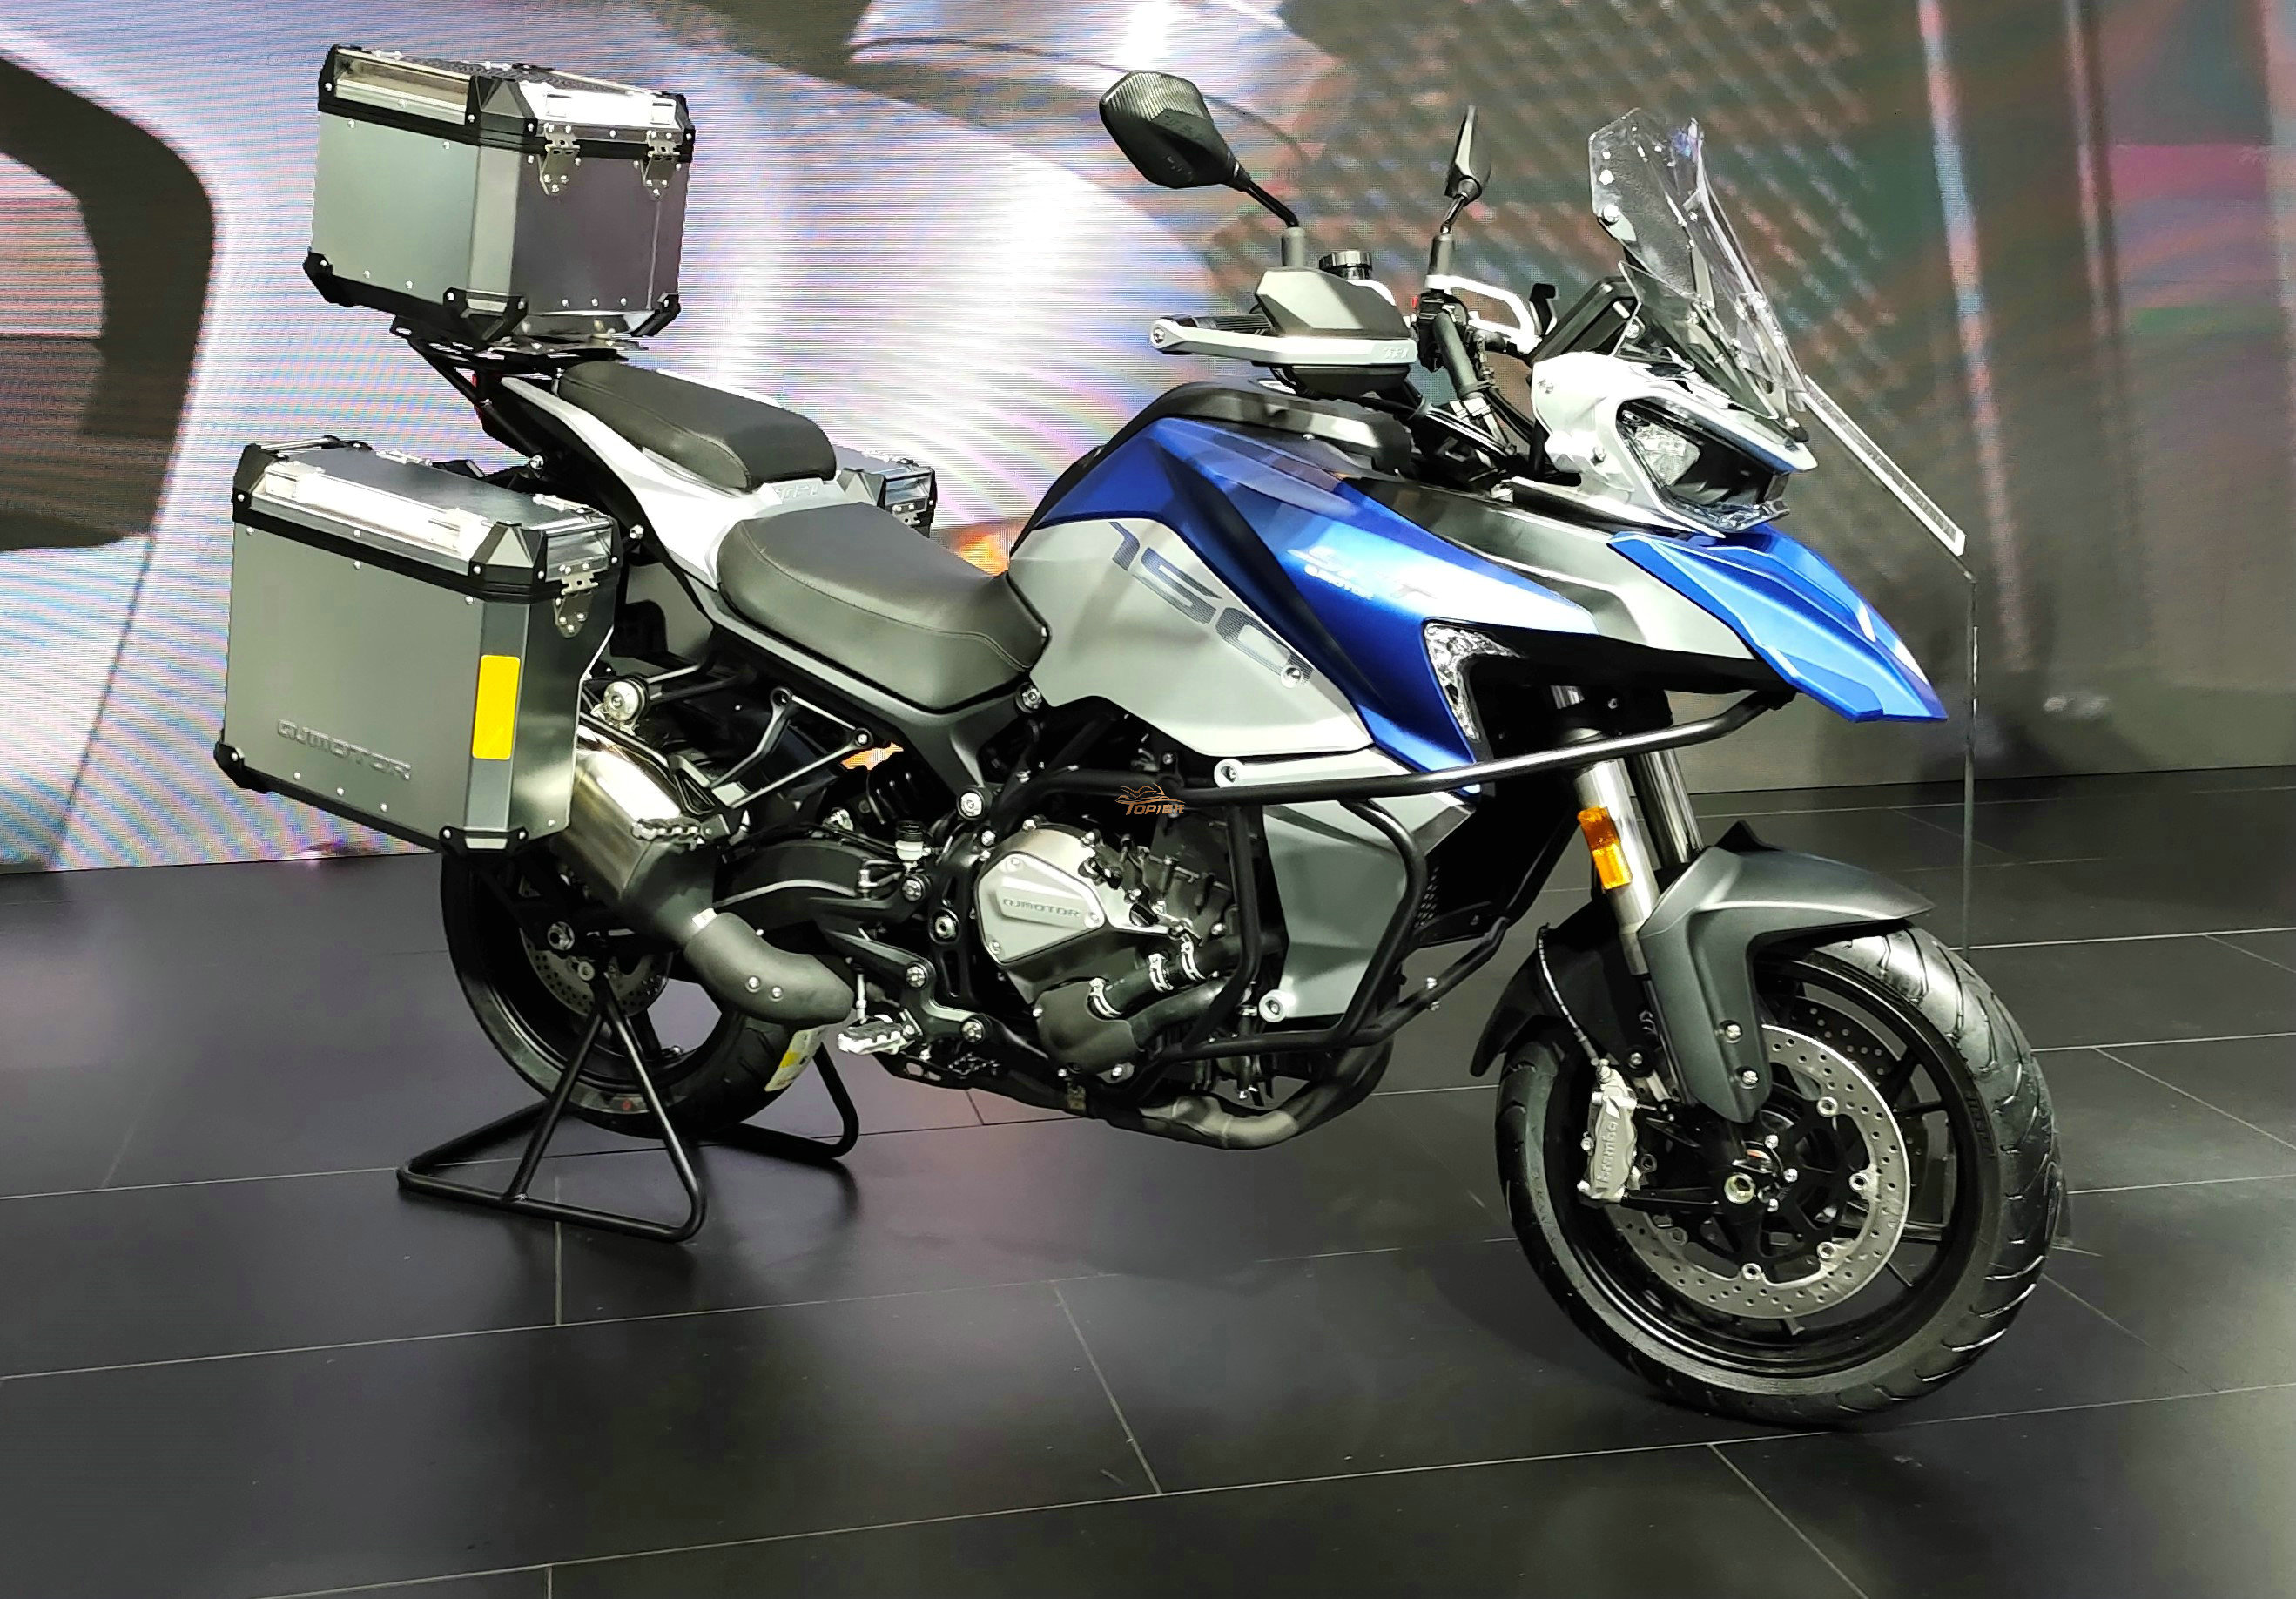 qjmotor 骁750目前国产排量最大的复古摩托车幼狮800,虽然在价格方面